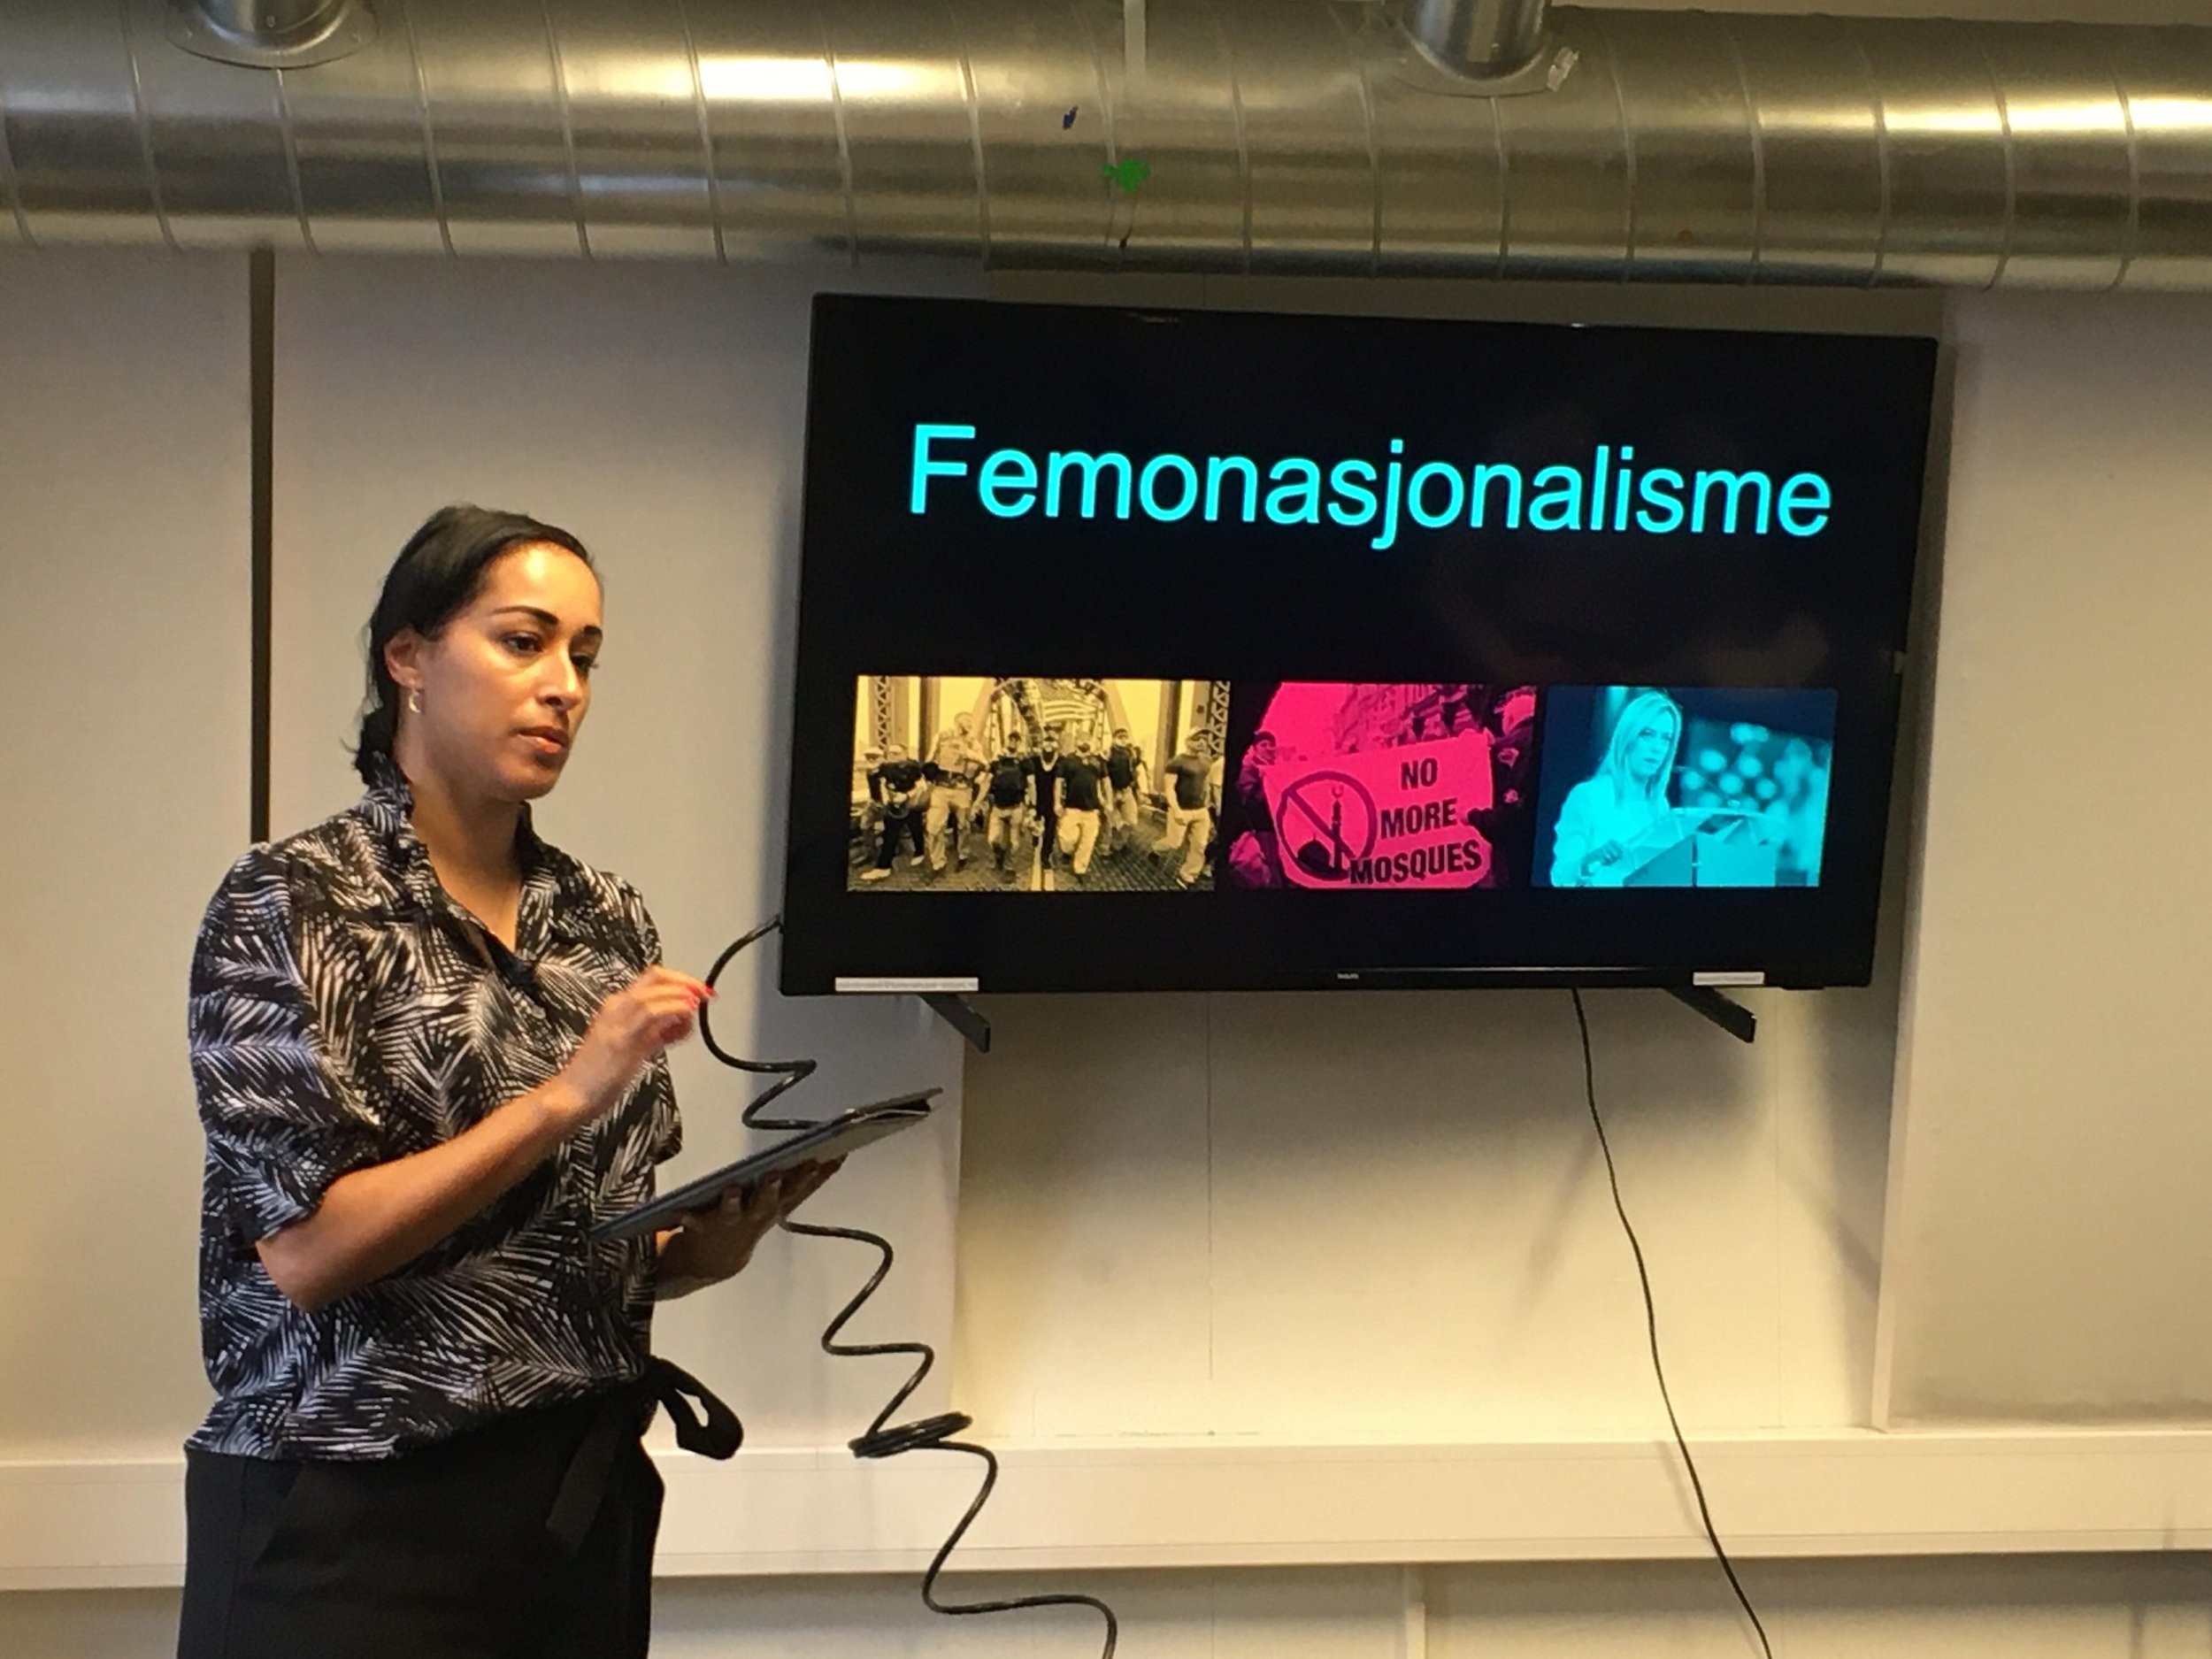 Workshop og diskusjon om femonasjonalisme